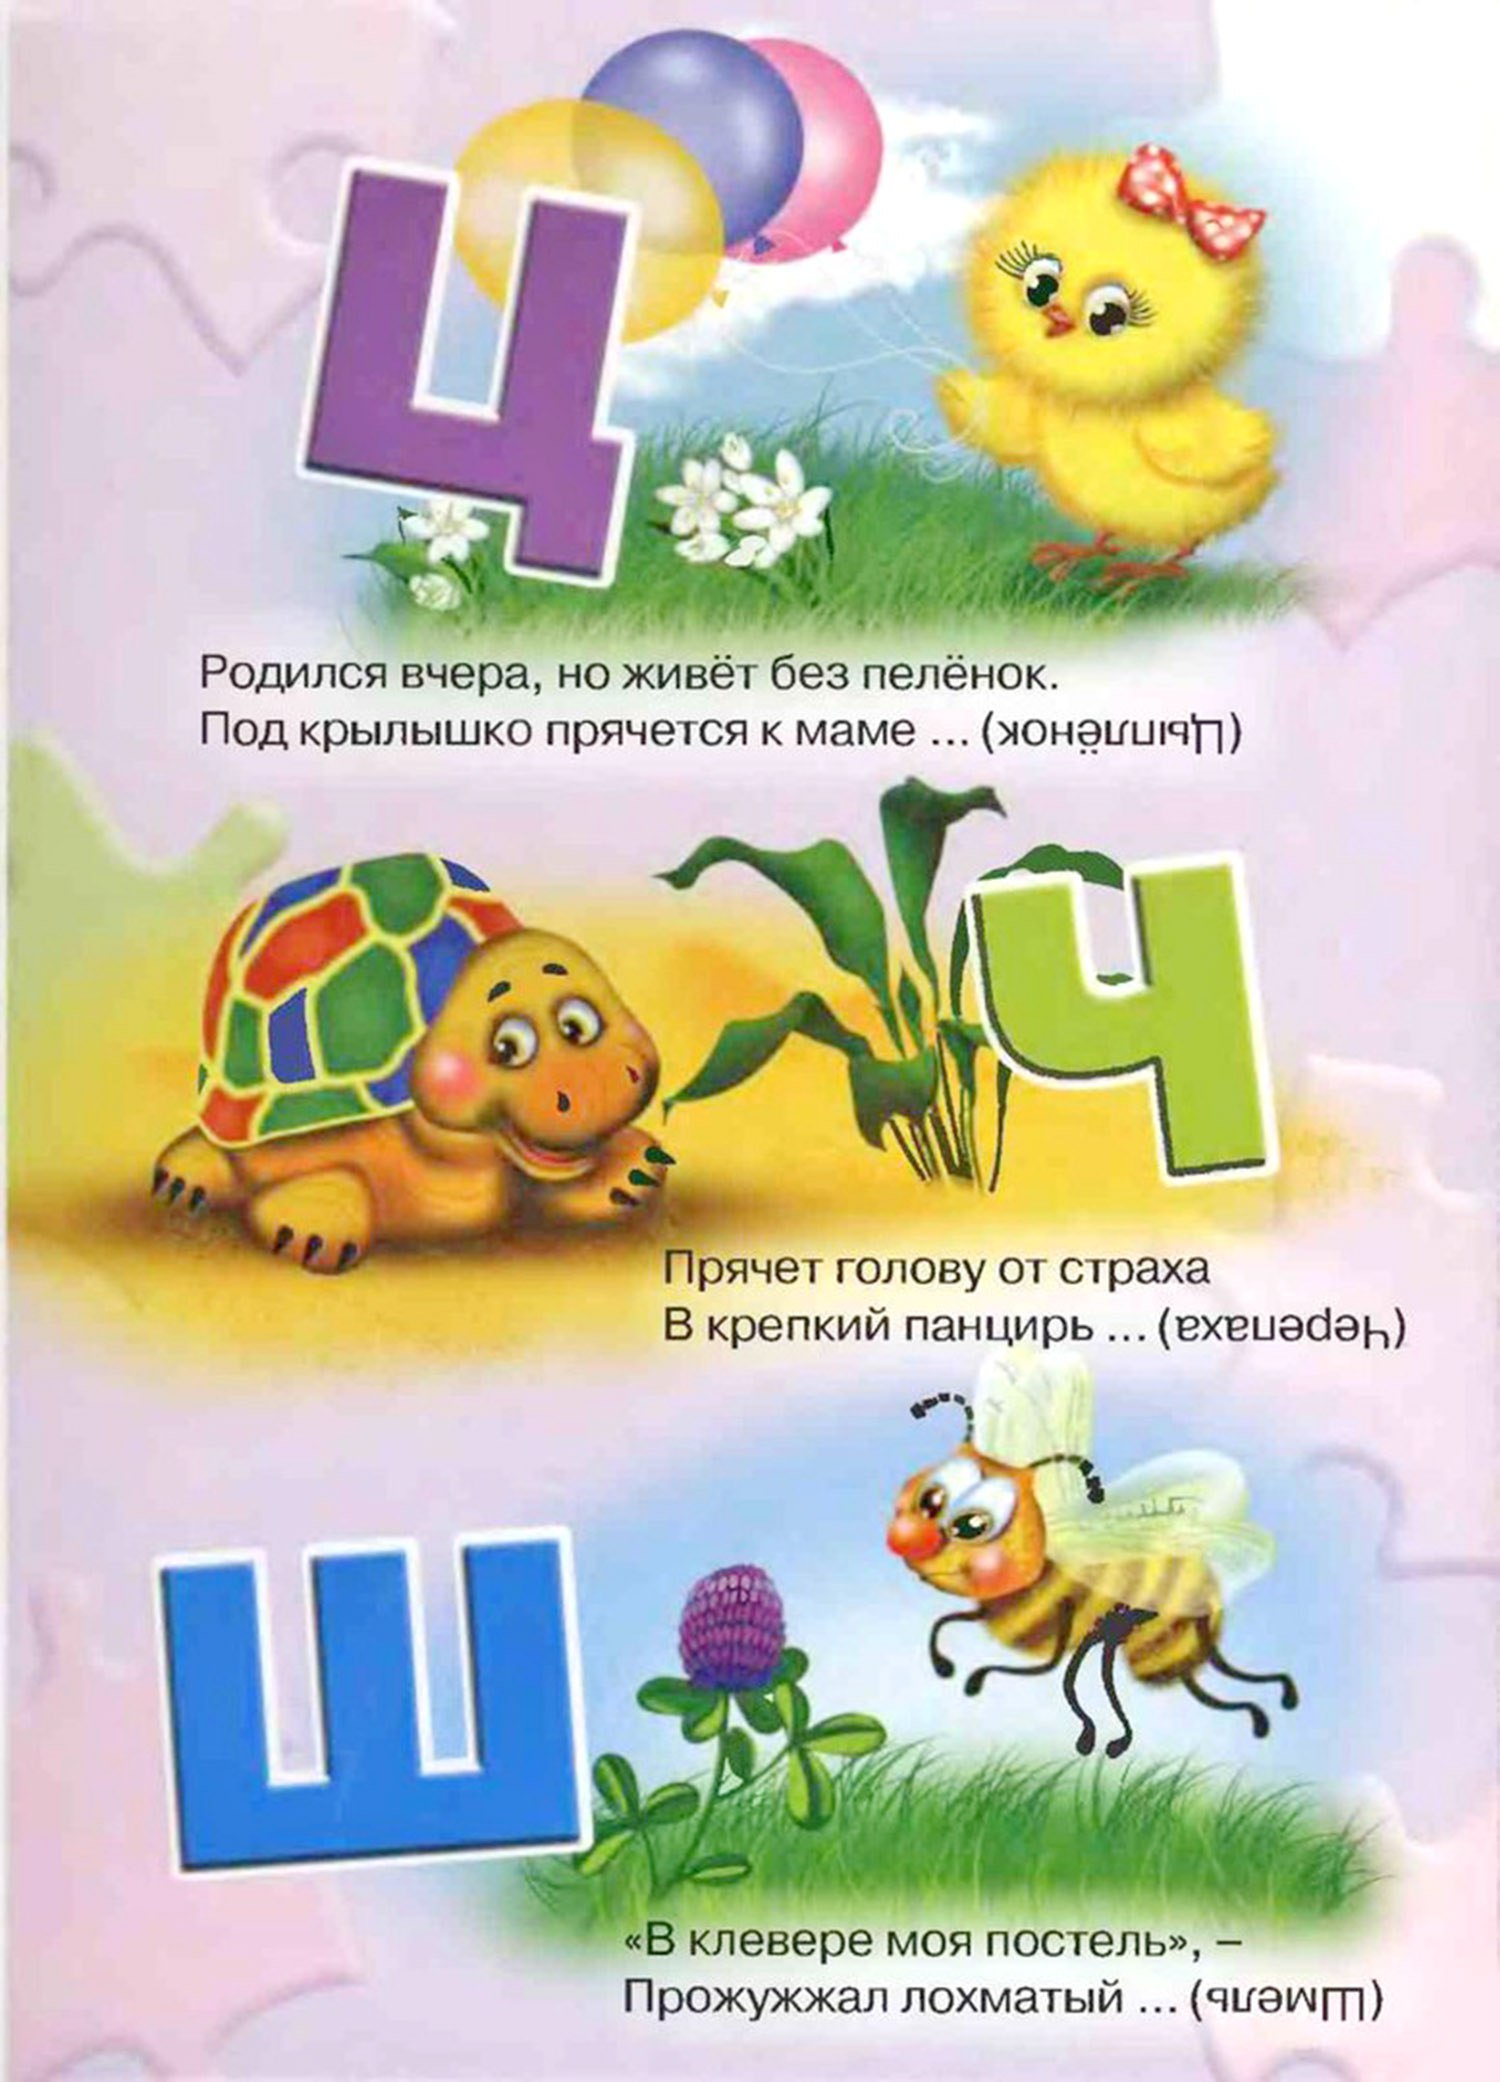 Загадки про букву Ц — изучаем русский алфавит